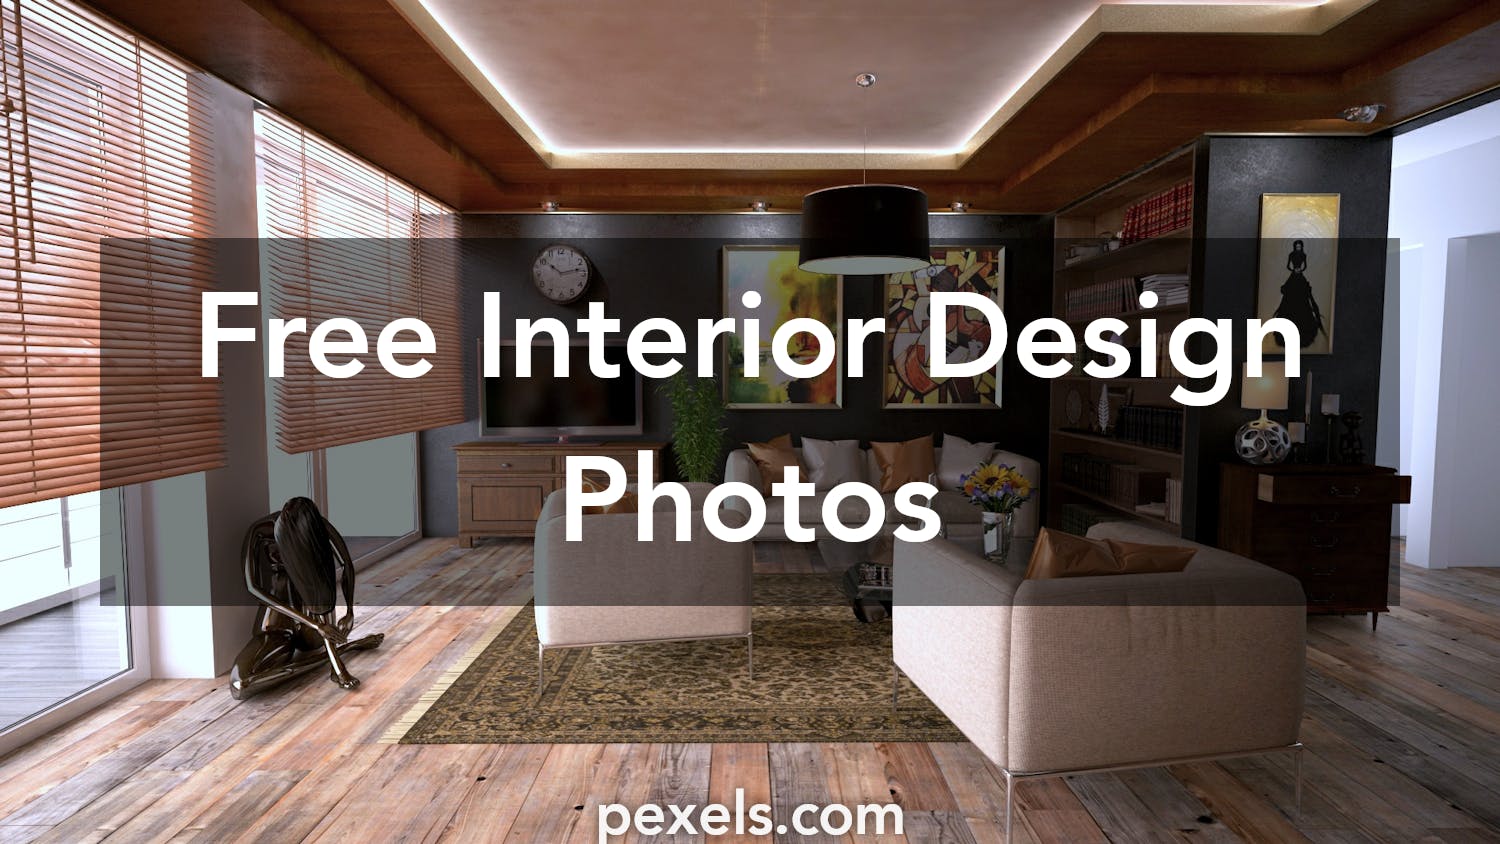  Home Interior Design Free Info